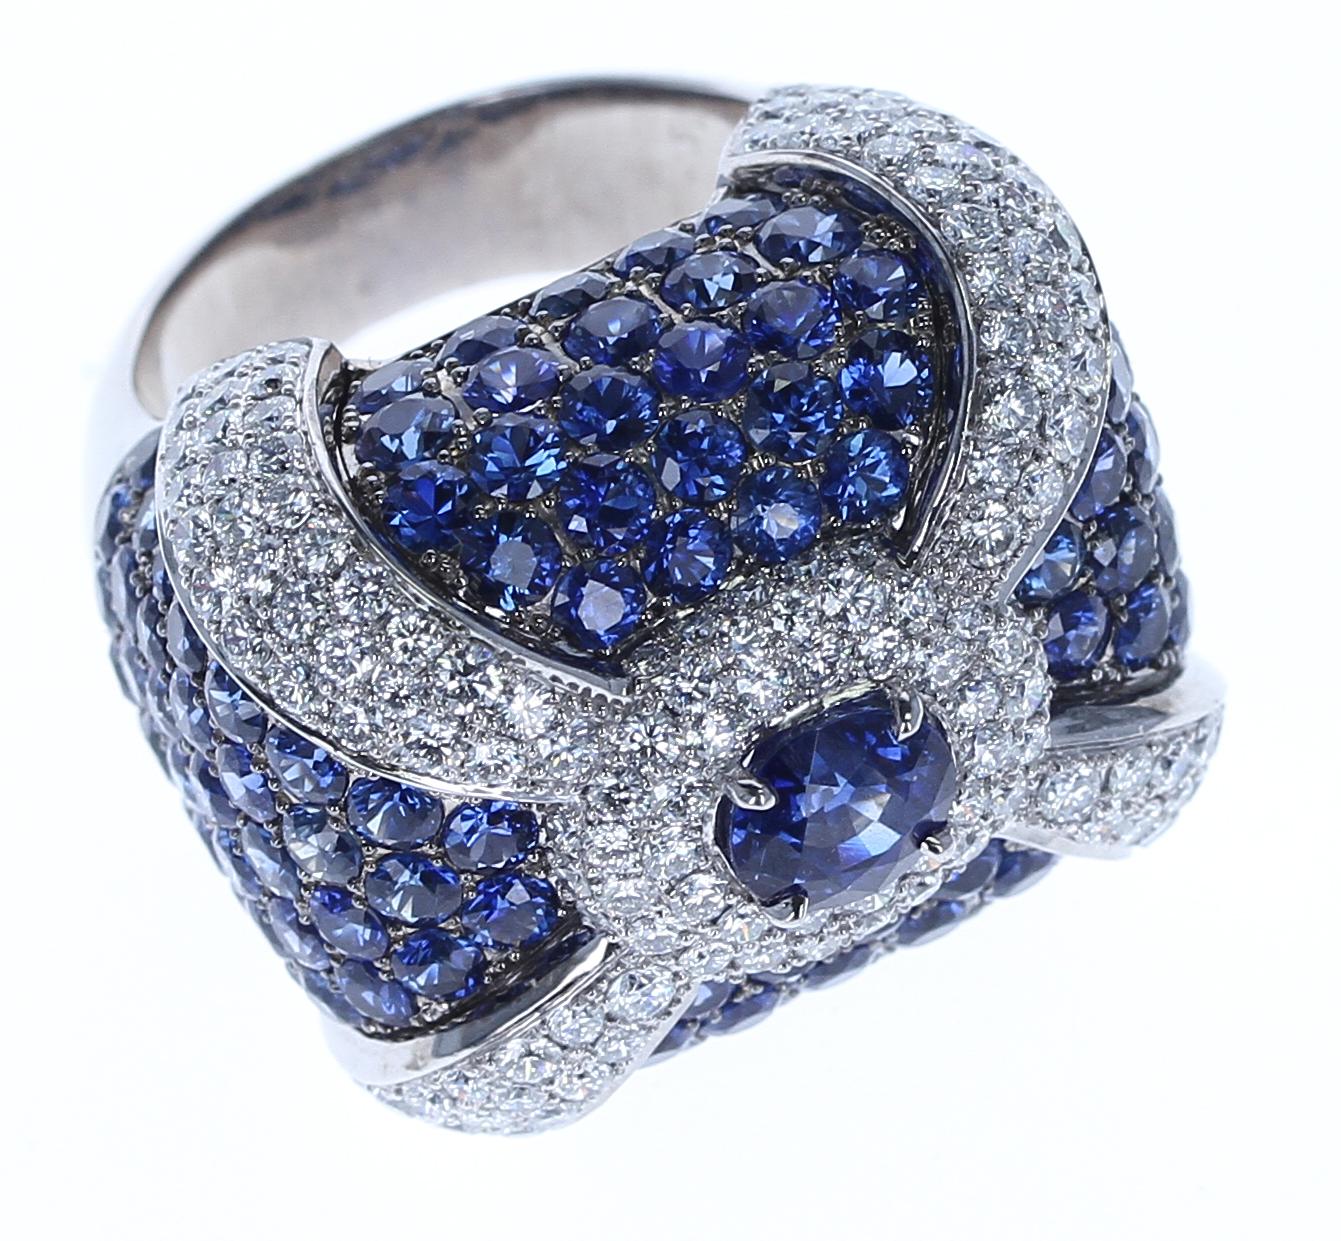 Ein ca. 1,27 Karat Center Sapphire Cocktail-Ring mit Pave Saphire und Diamanten, 18K Weißgold. 
Akzent Saphire Gewicht: 9,10 Karat
Gesamtgewicht: 23,56 Gramm
Gezeichnet LEVIEV.